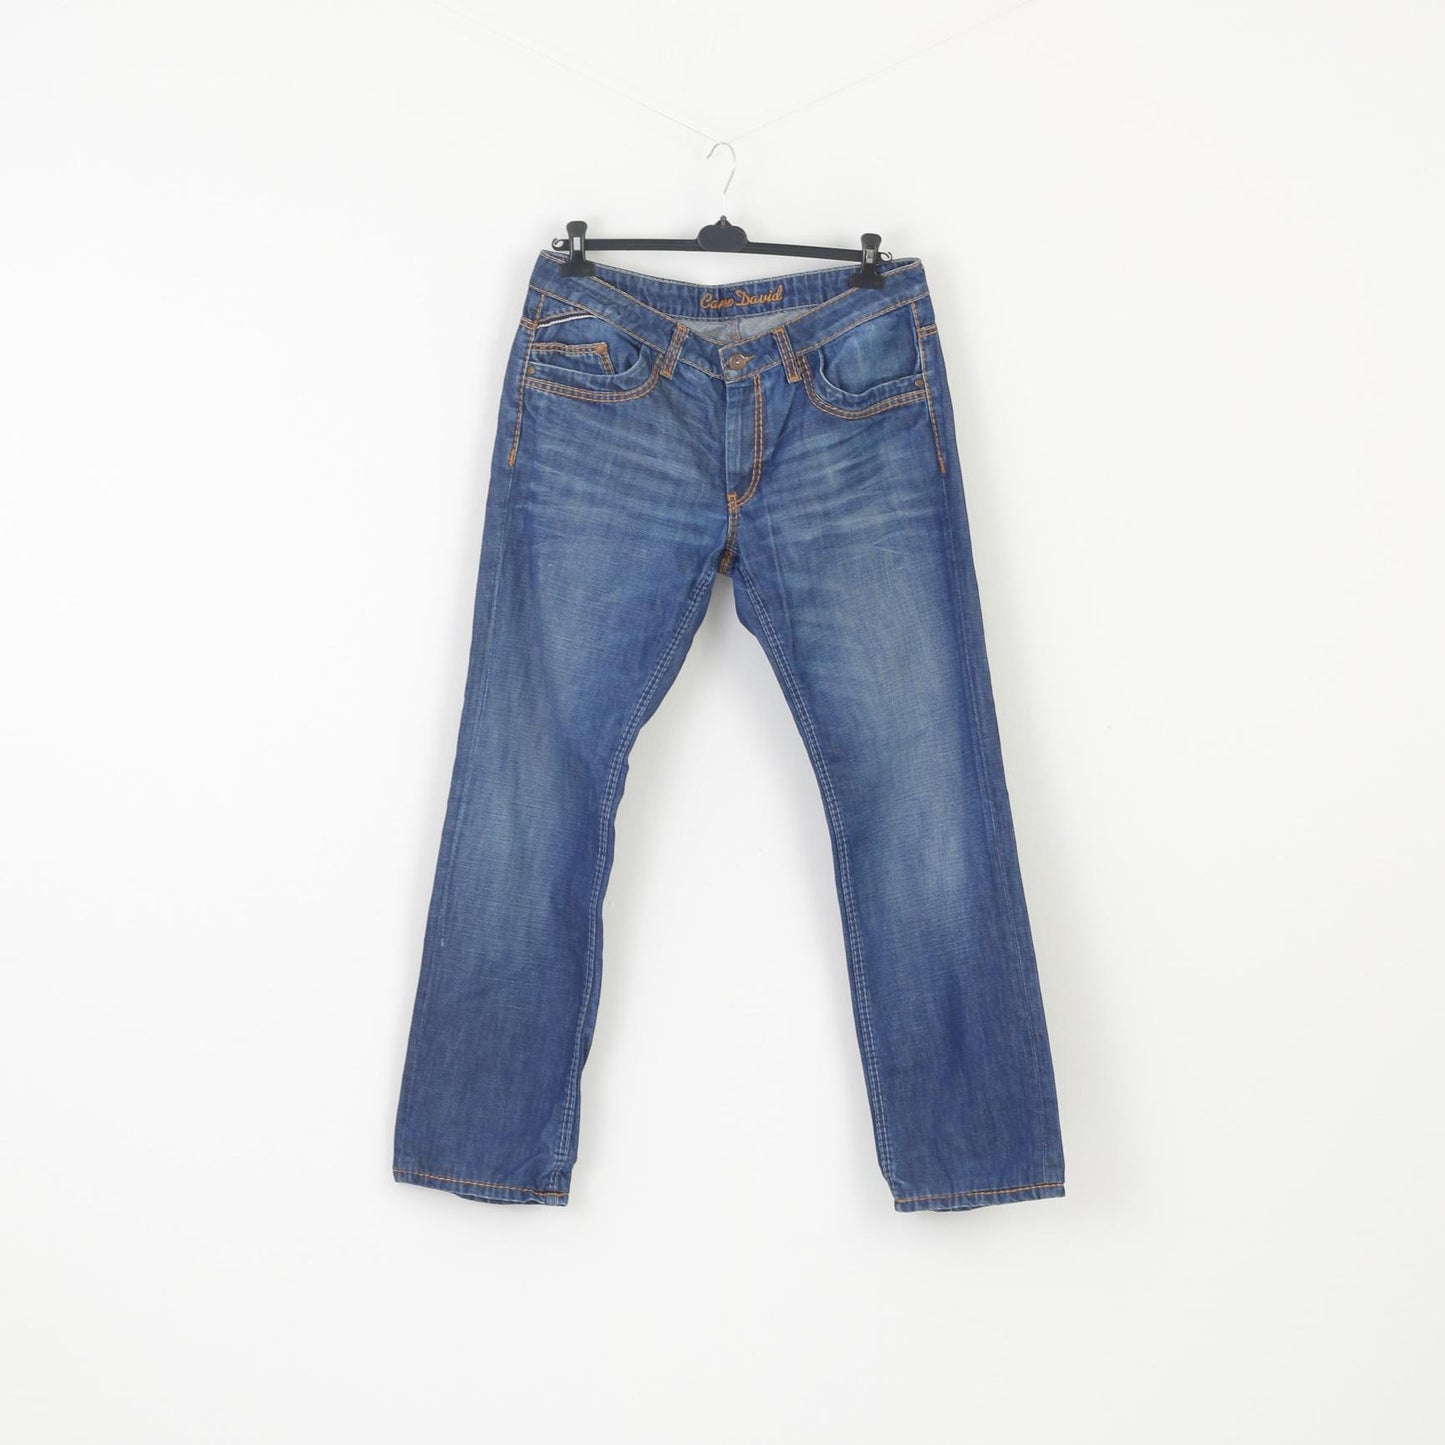 Navy Camp Trousers P Denim Clothes Jeans – Men Leg Cotton Retrospect Straight Long 36 David